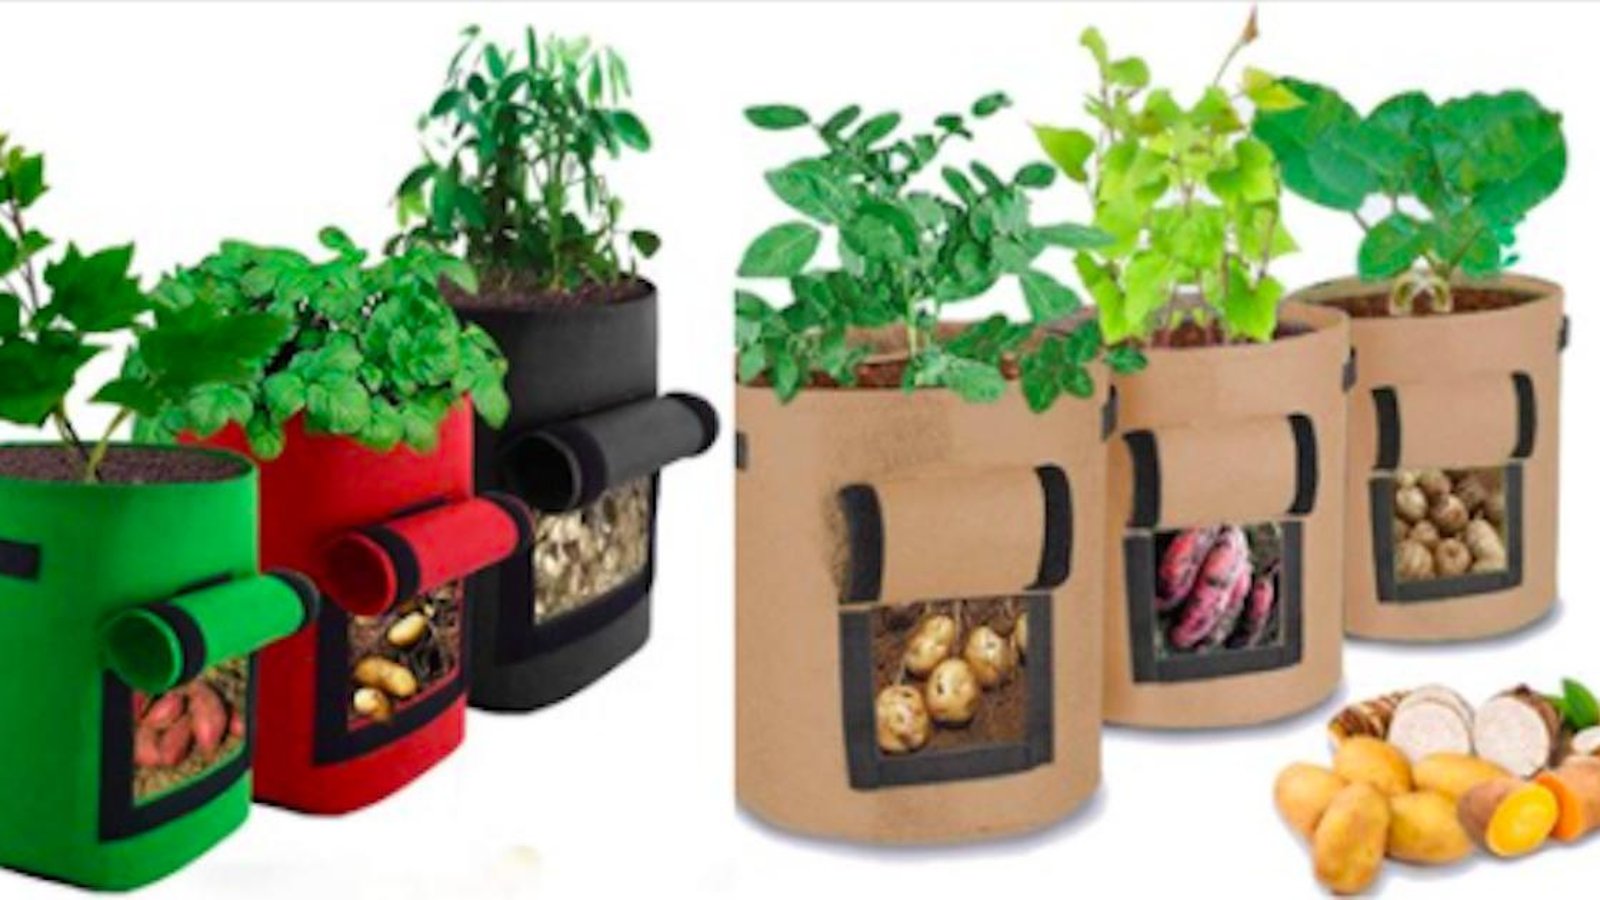 Le saviez-vous? Il est possible de cultiver des légumes dans des sacs!